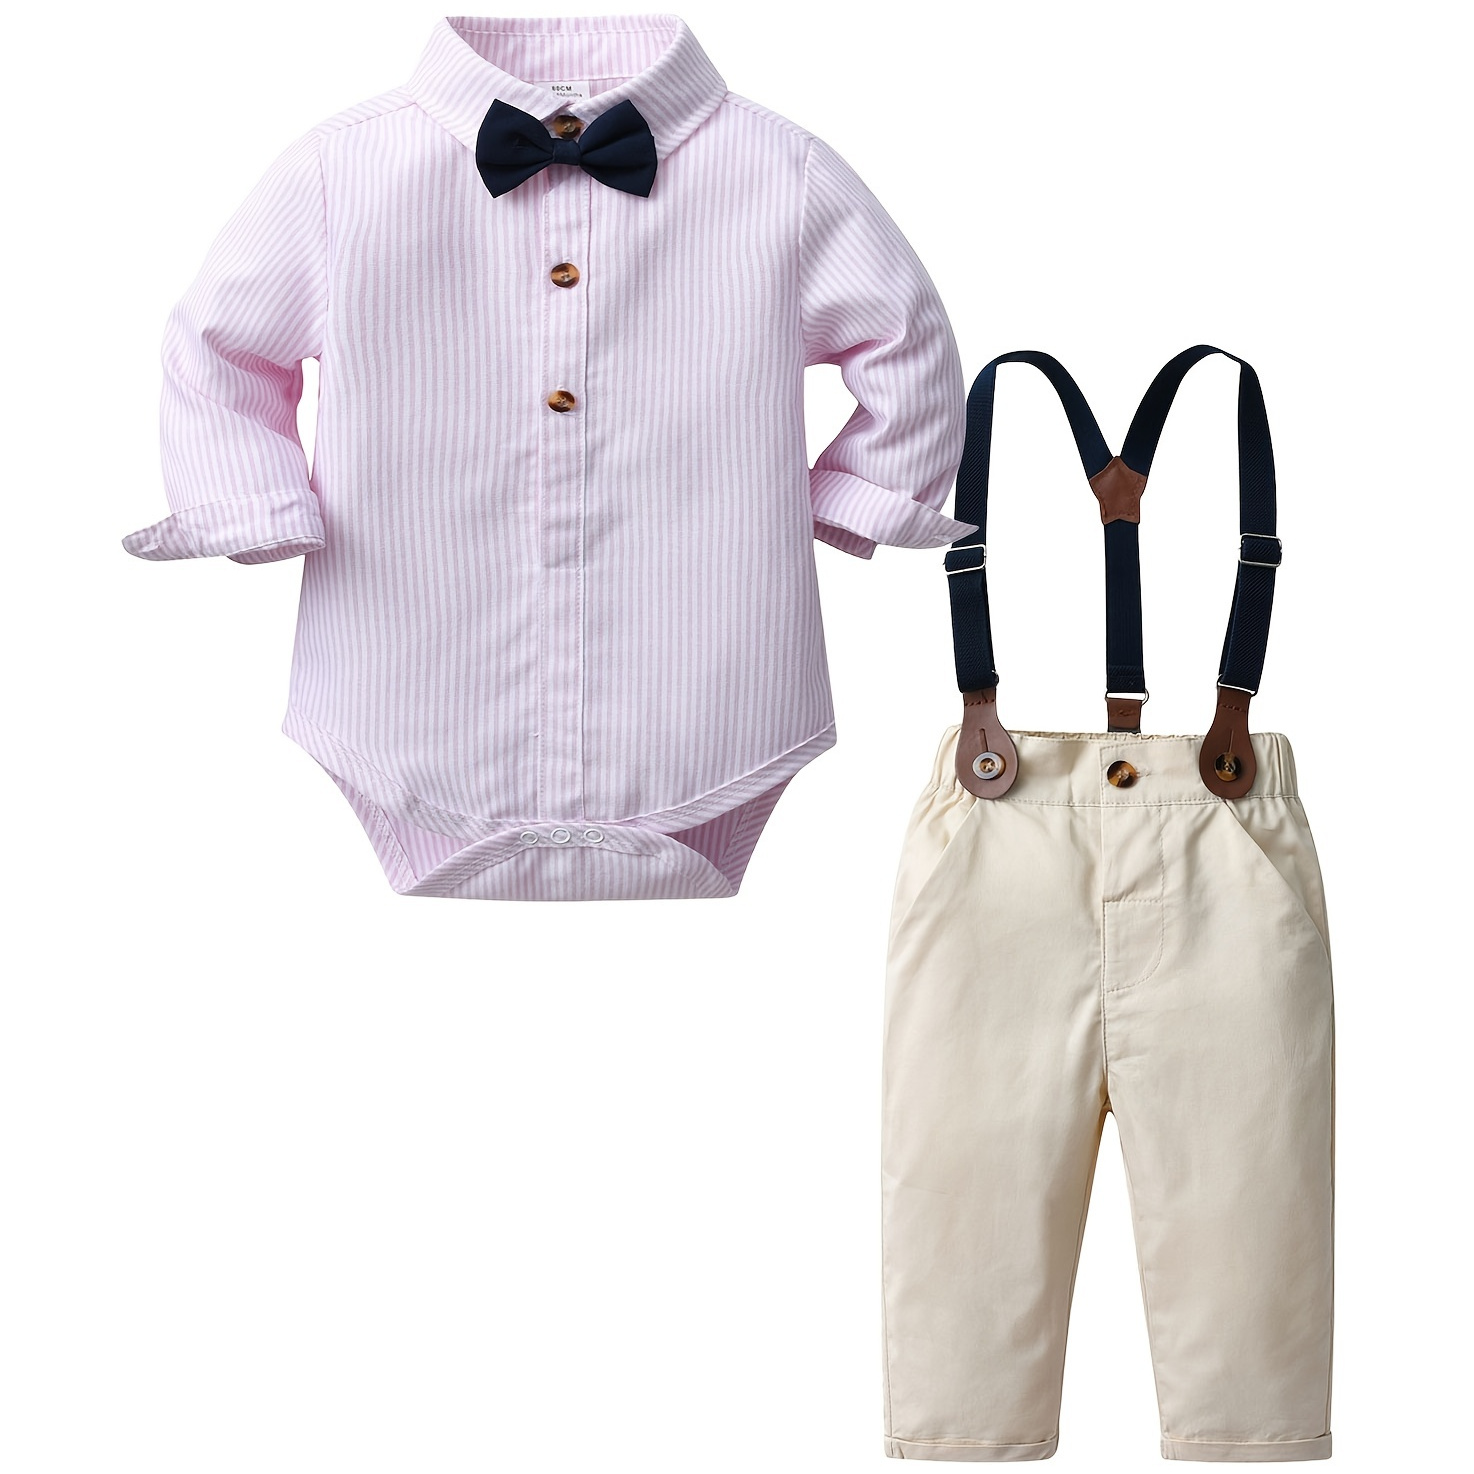 

Baby Gentleman Suit Striped Long Sleeve Romper+suspender Pants